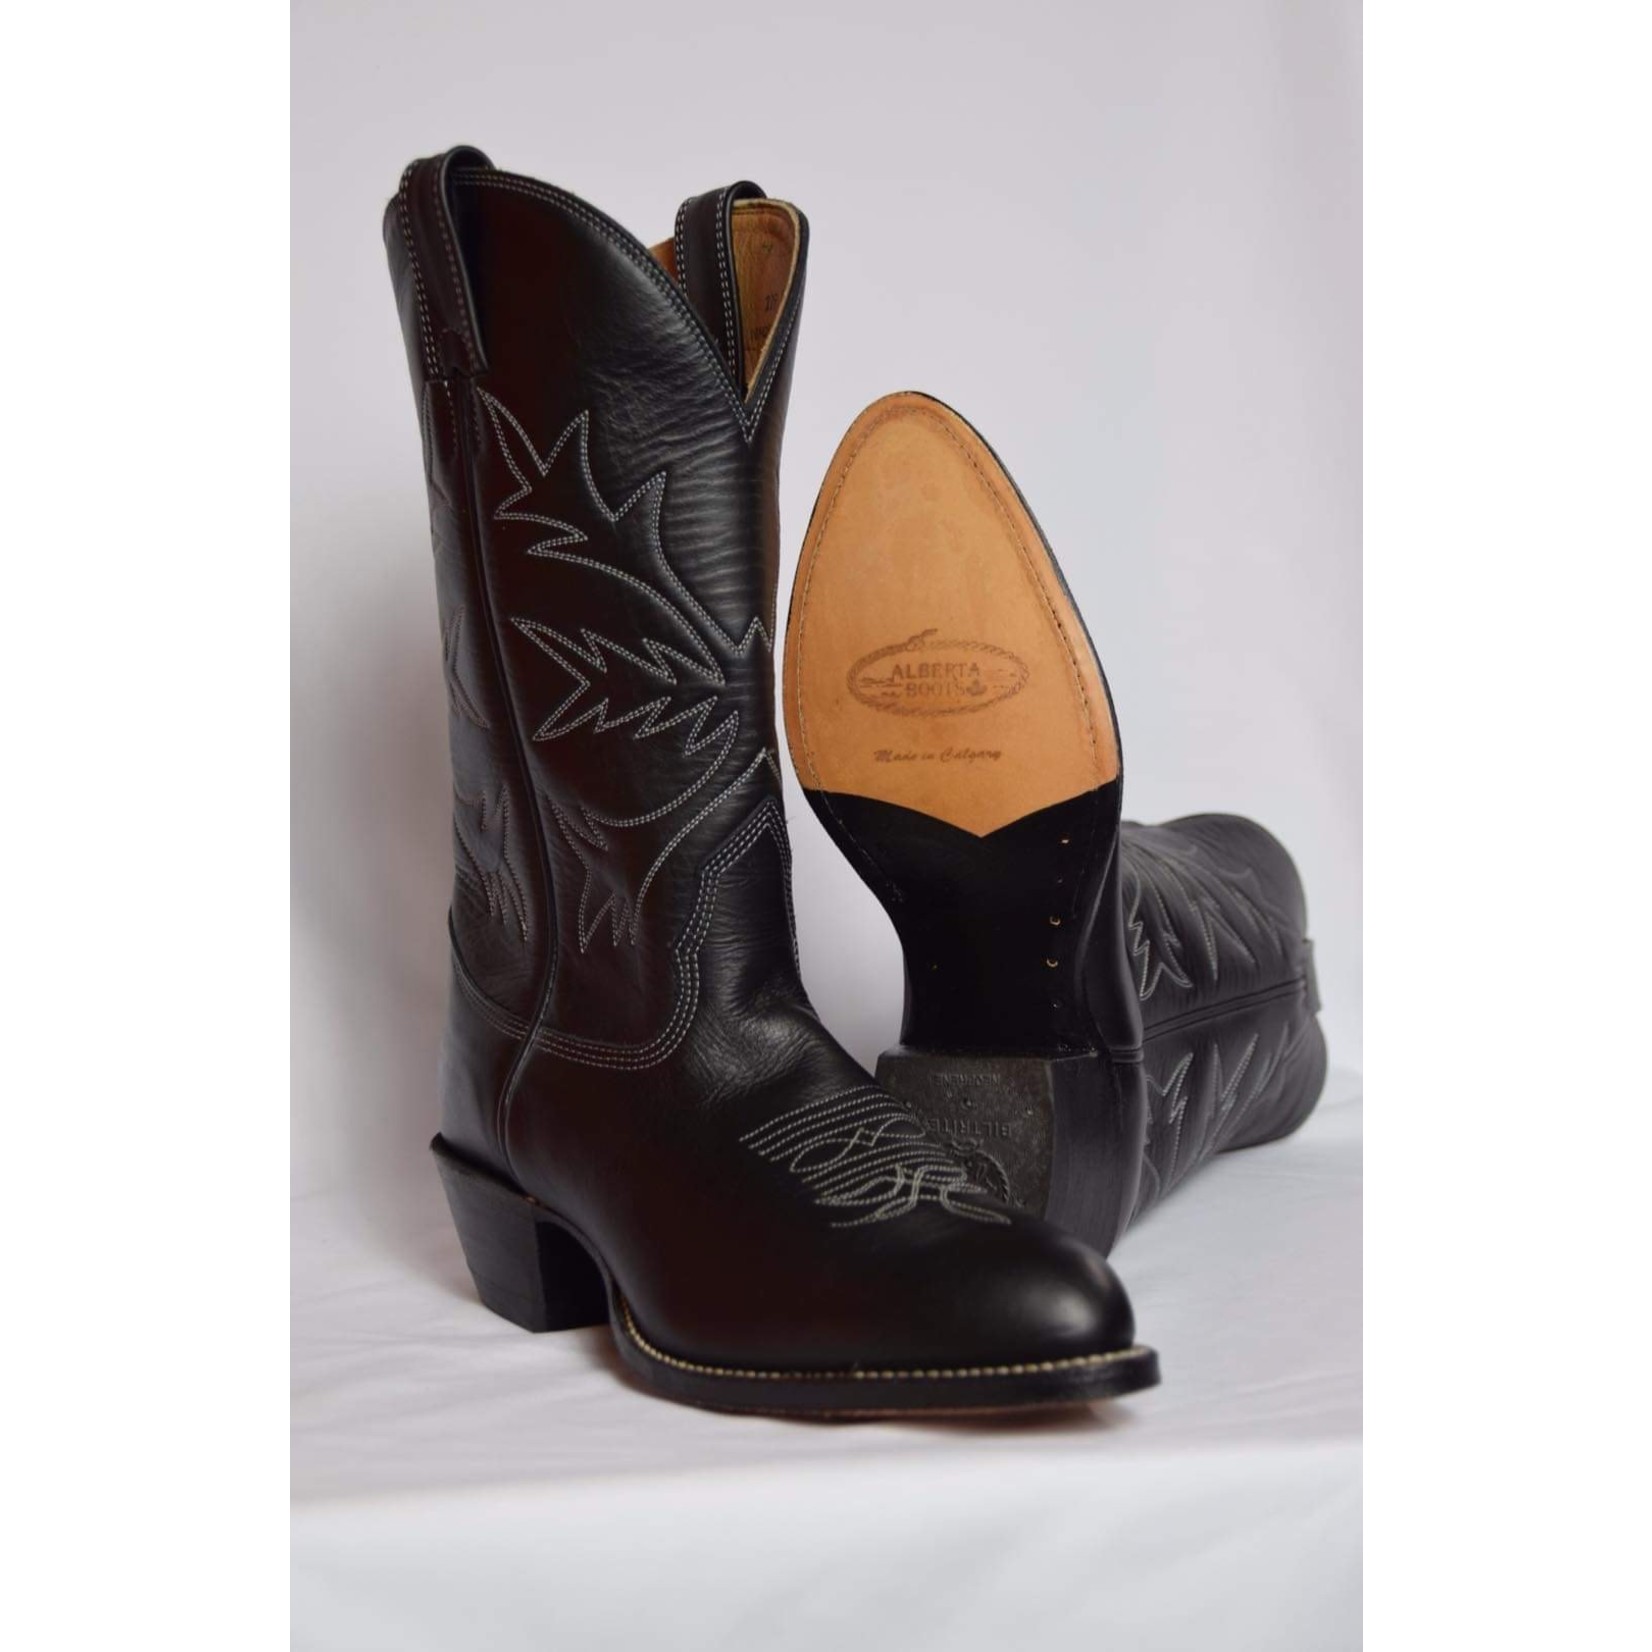 Alberta Boots Alberta Boots Men’s Cowboy Boot 229TB 4E